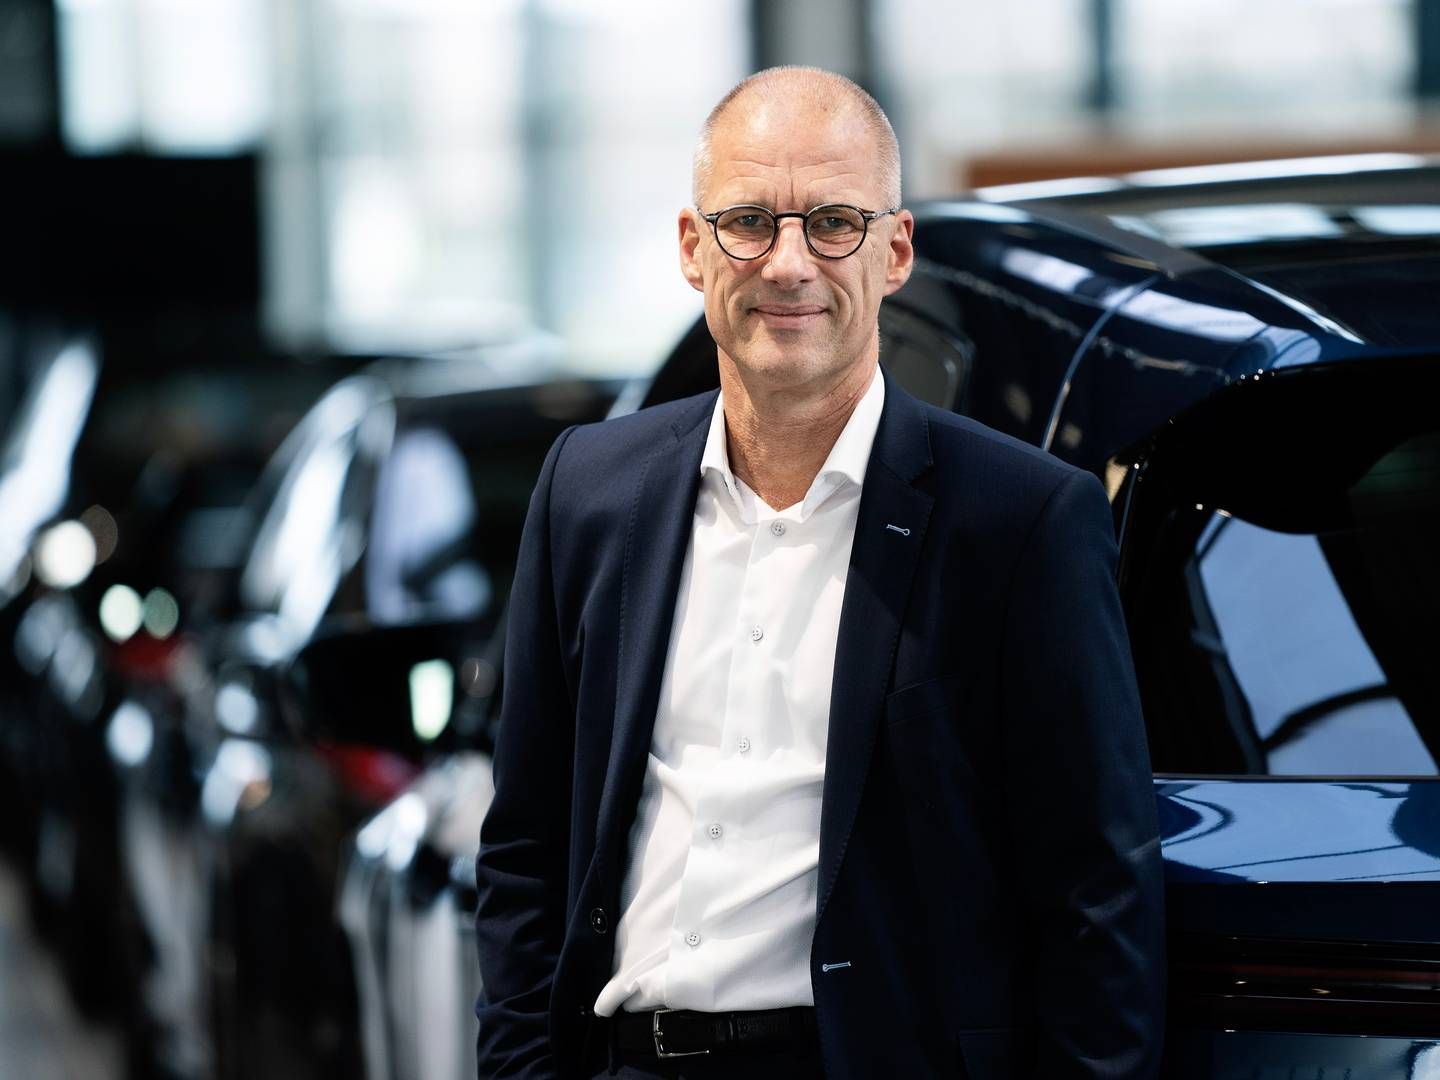 Adm. direktør Niels Vrist Bertelsen glæder sig over, at handlen nu er godkendt. | Foto: Pr / Nic. Christiansen Gruppen / Jakob Boserup